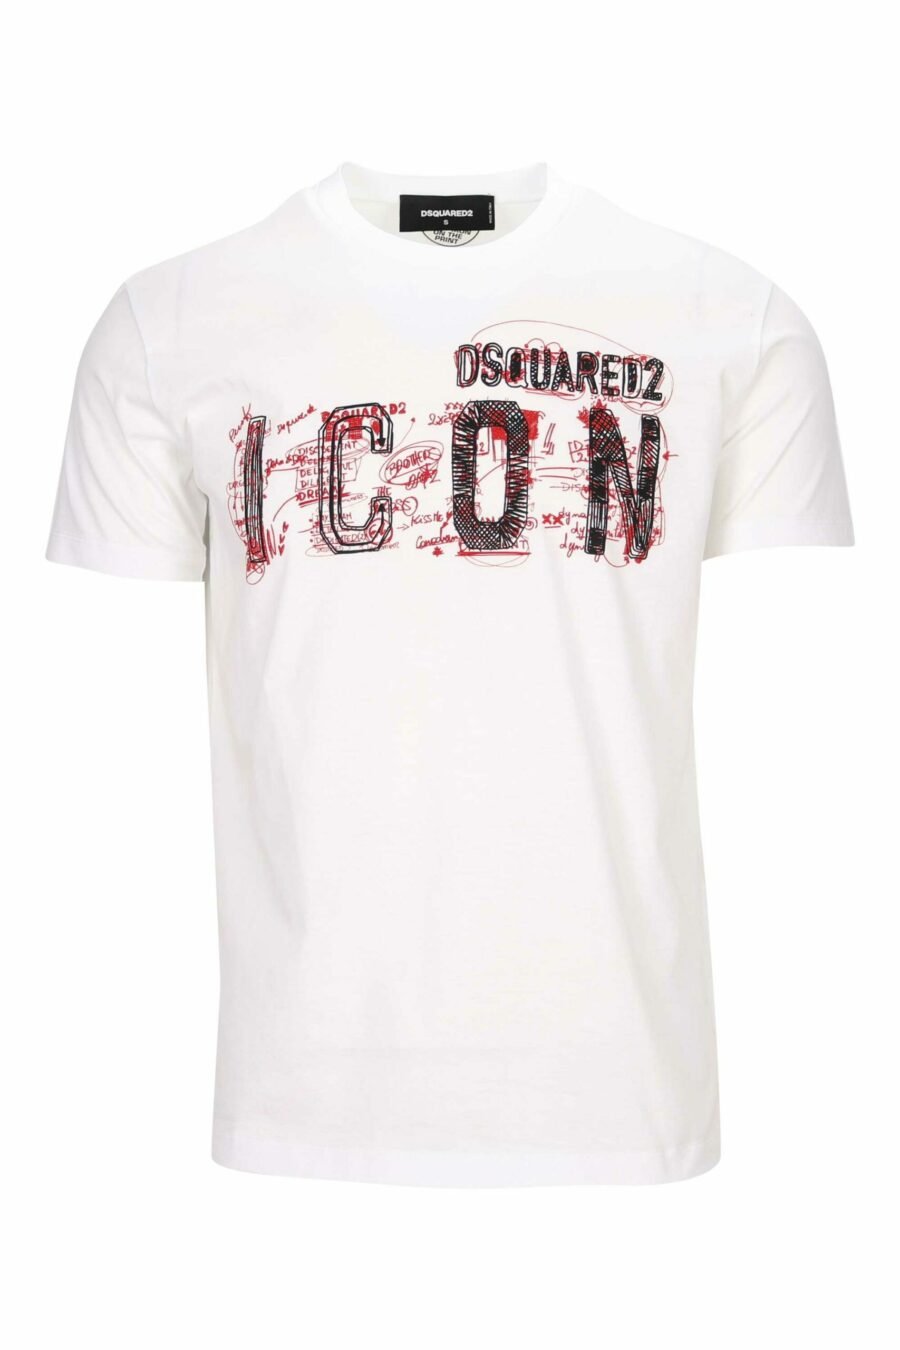 T-shirt branca com o maxilogo "ícone" do doodle - 8054148362829 à escala